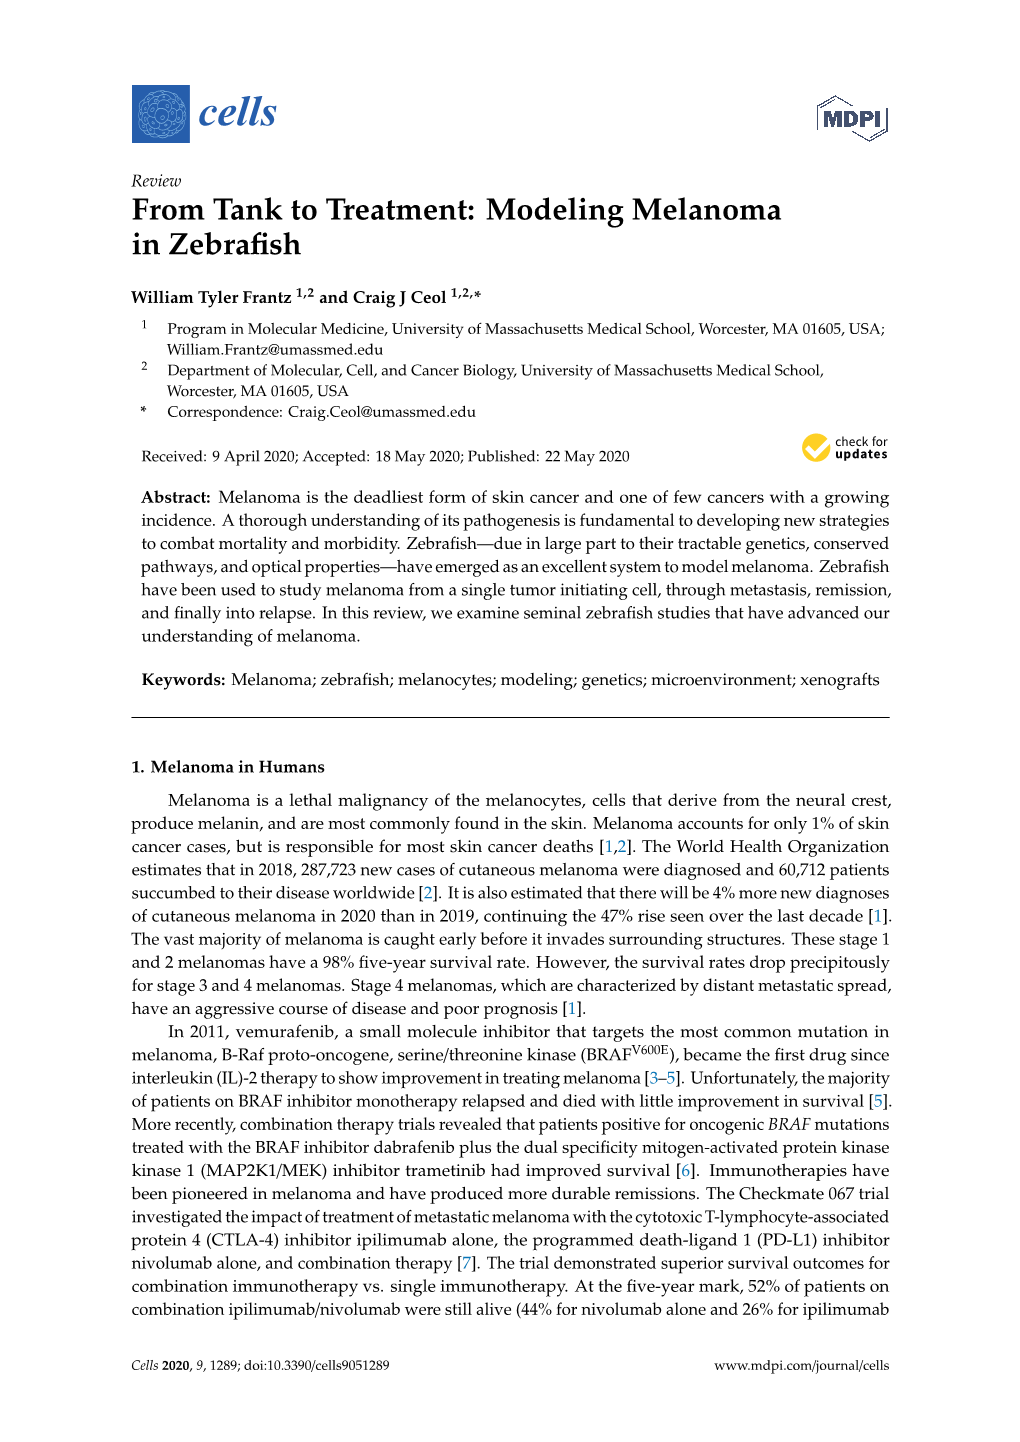 Modeling Melanoma in Zebrafish